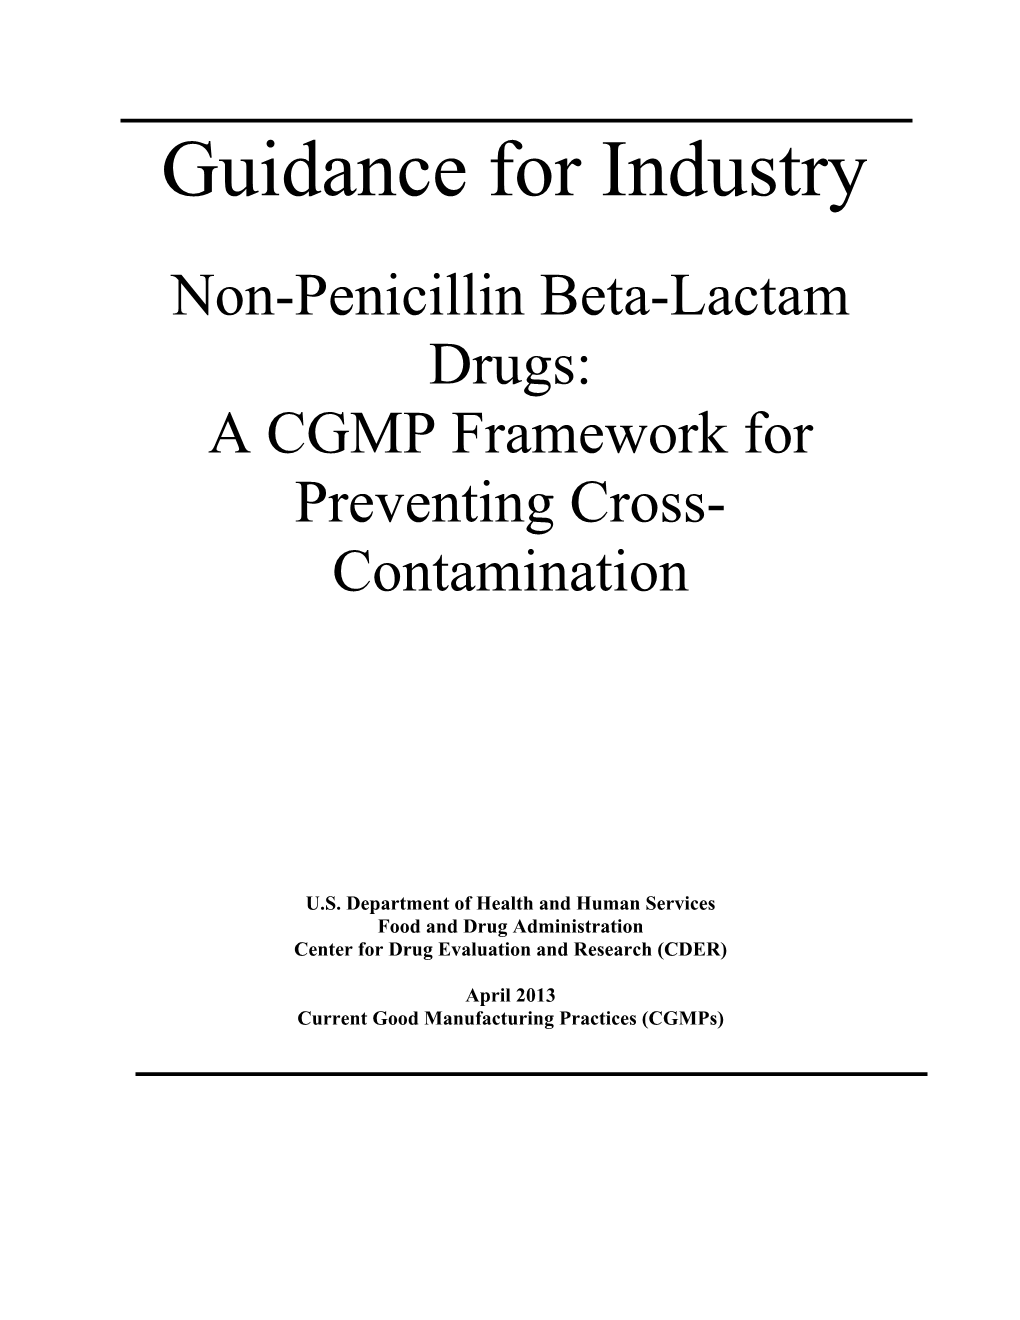 Non-Penicillin Beta-Lactam Drugs: a CGMP Framework for Preventing Cross- Contamination